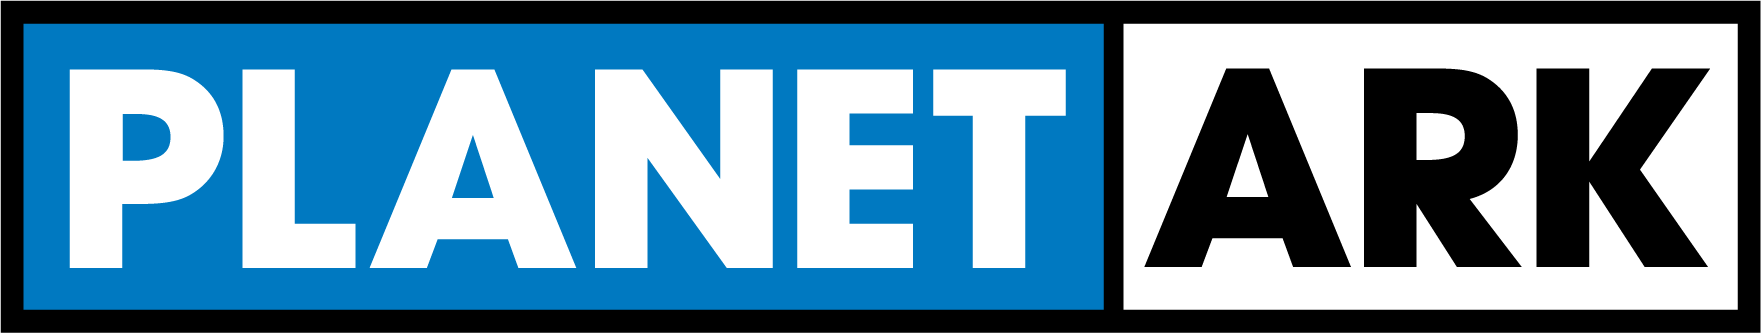 planet ark logo